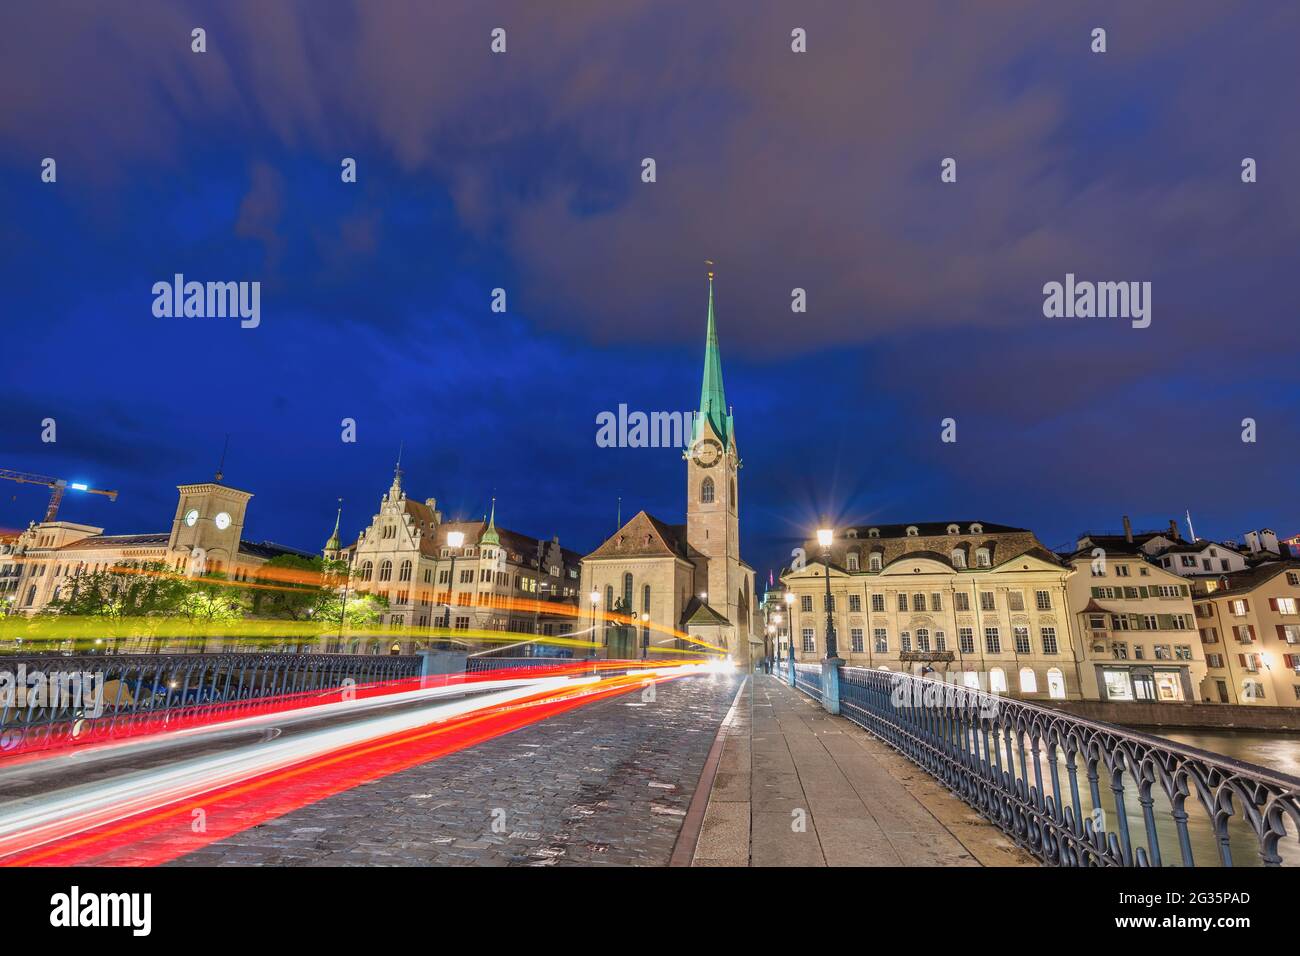 Zurigo Svizzera, skyline notturno della città presso la chiesa di Fraumunster e il ponte Munster Foto Stock